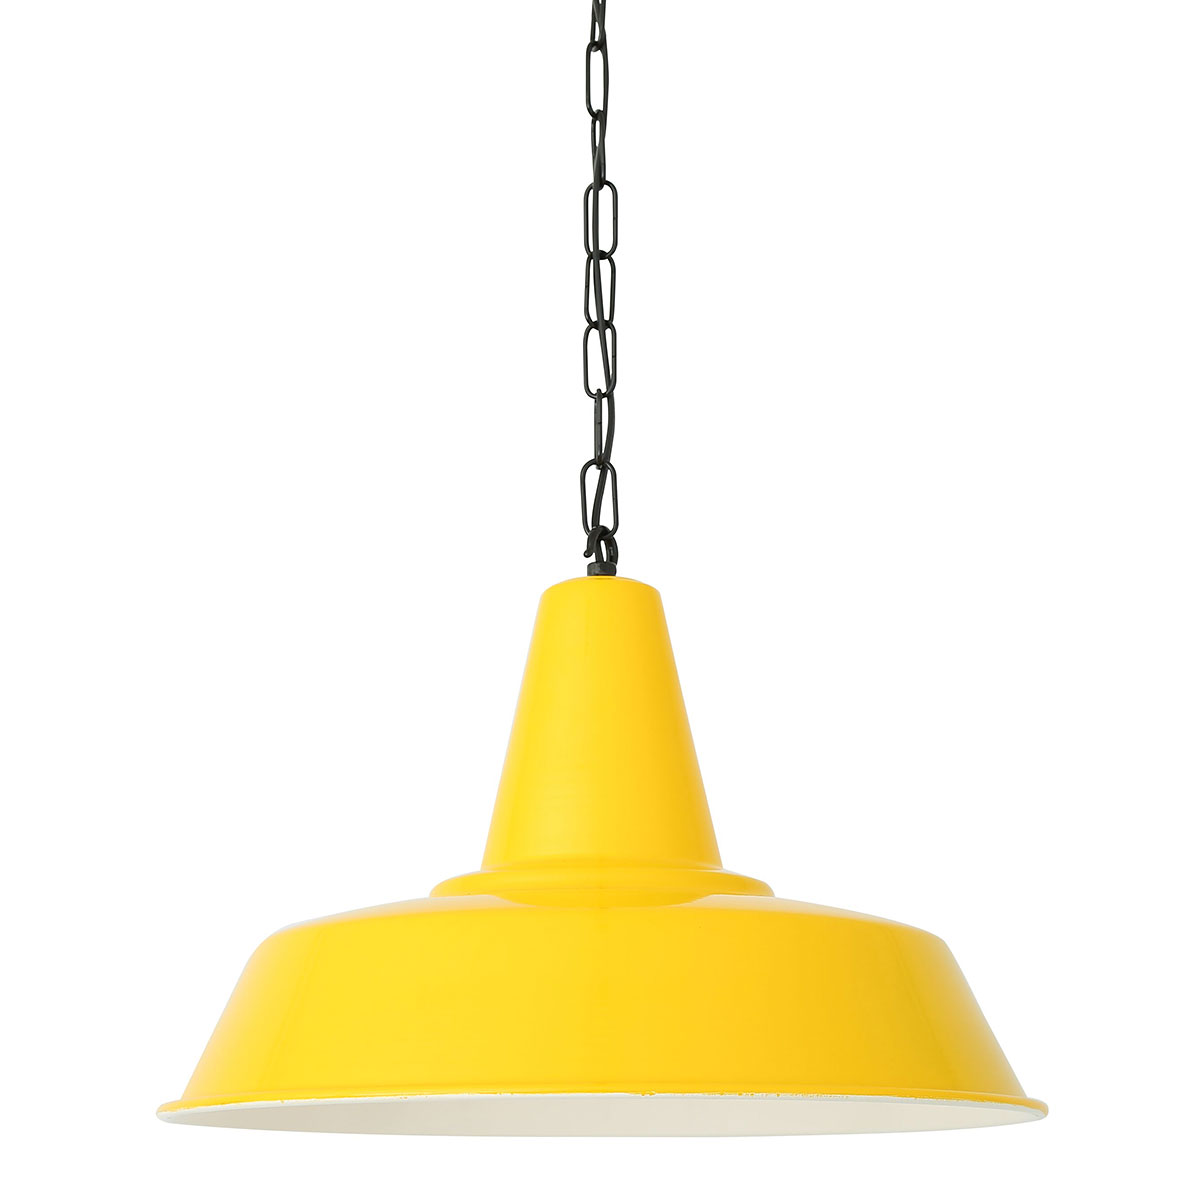 Schwarze Industriestil-Pendelleuchte 40 cm mit Kette: Gelbe Industrielampe, mit Kette